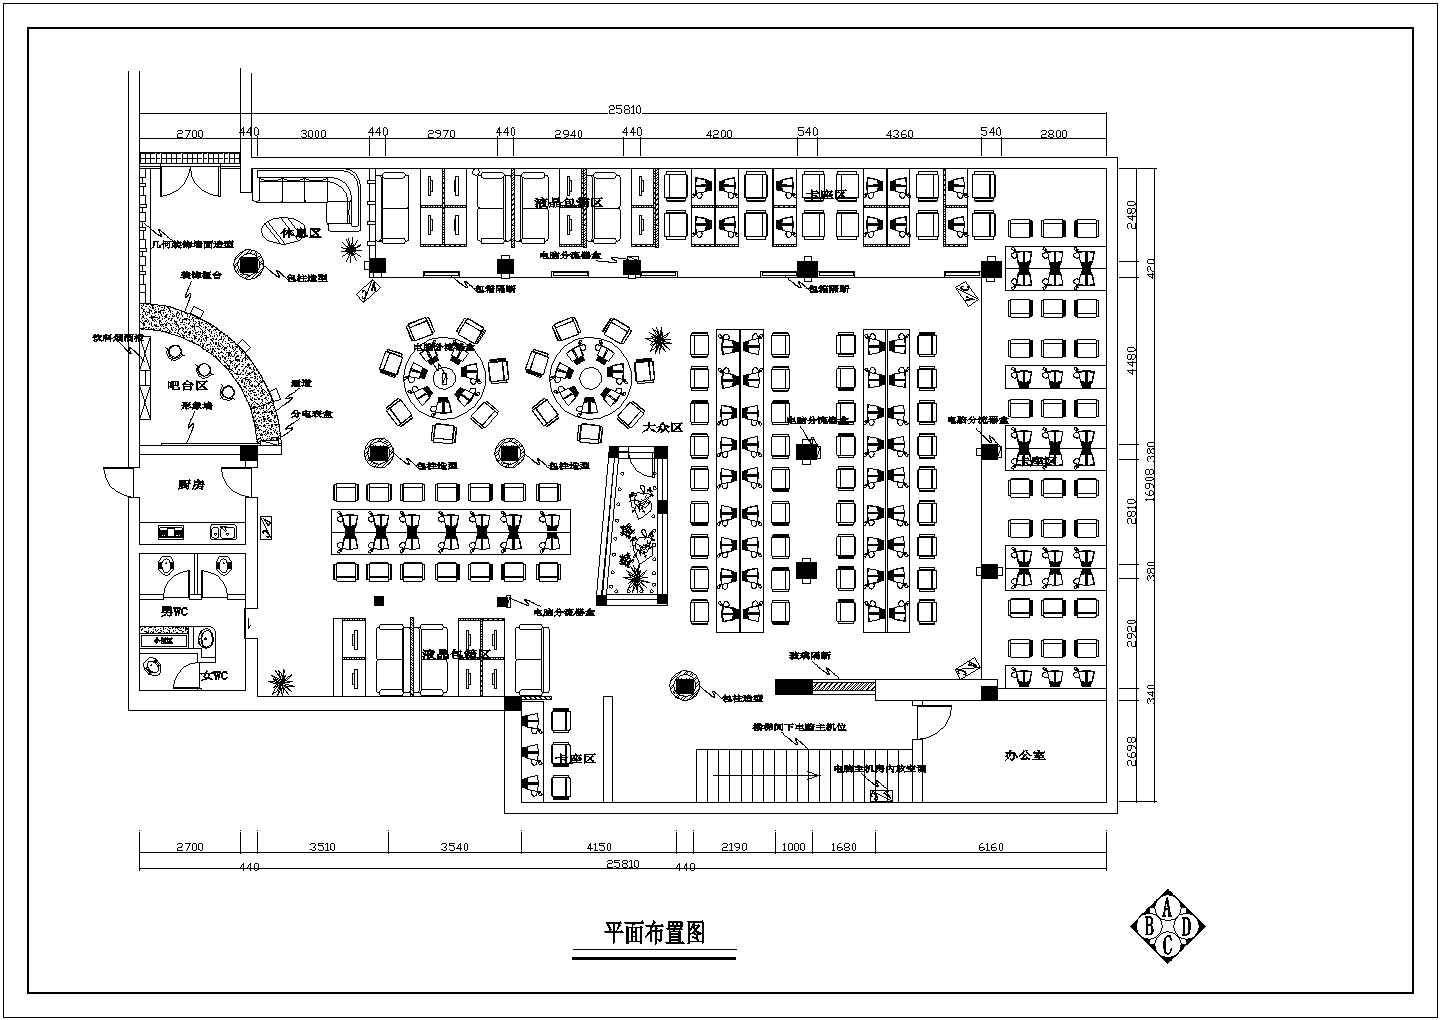 【江苏省】网吧设计装修施工图设计图纸